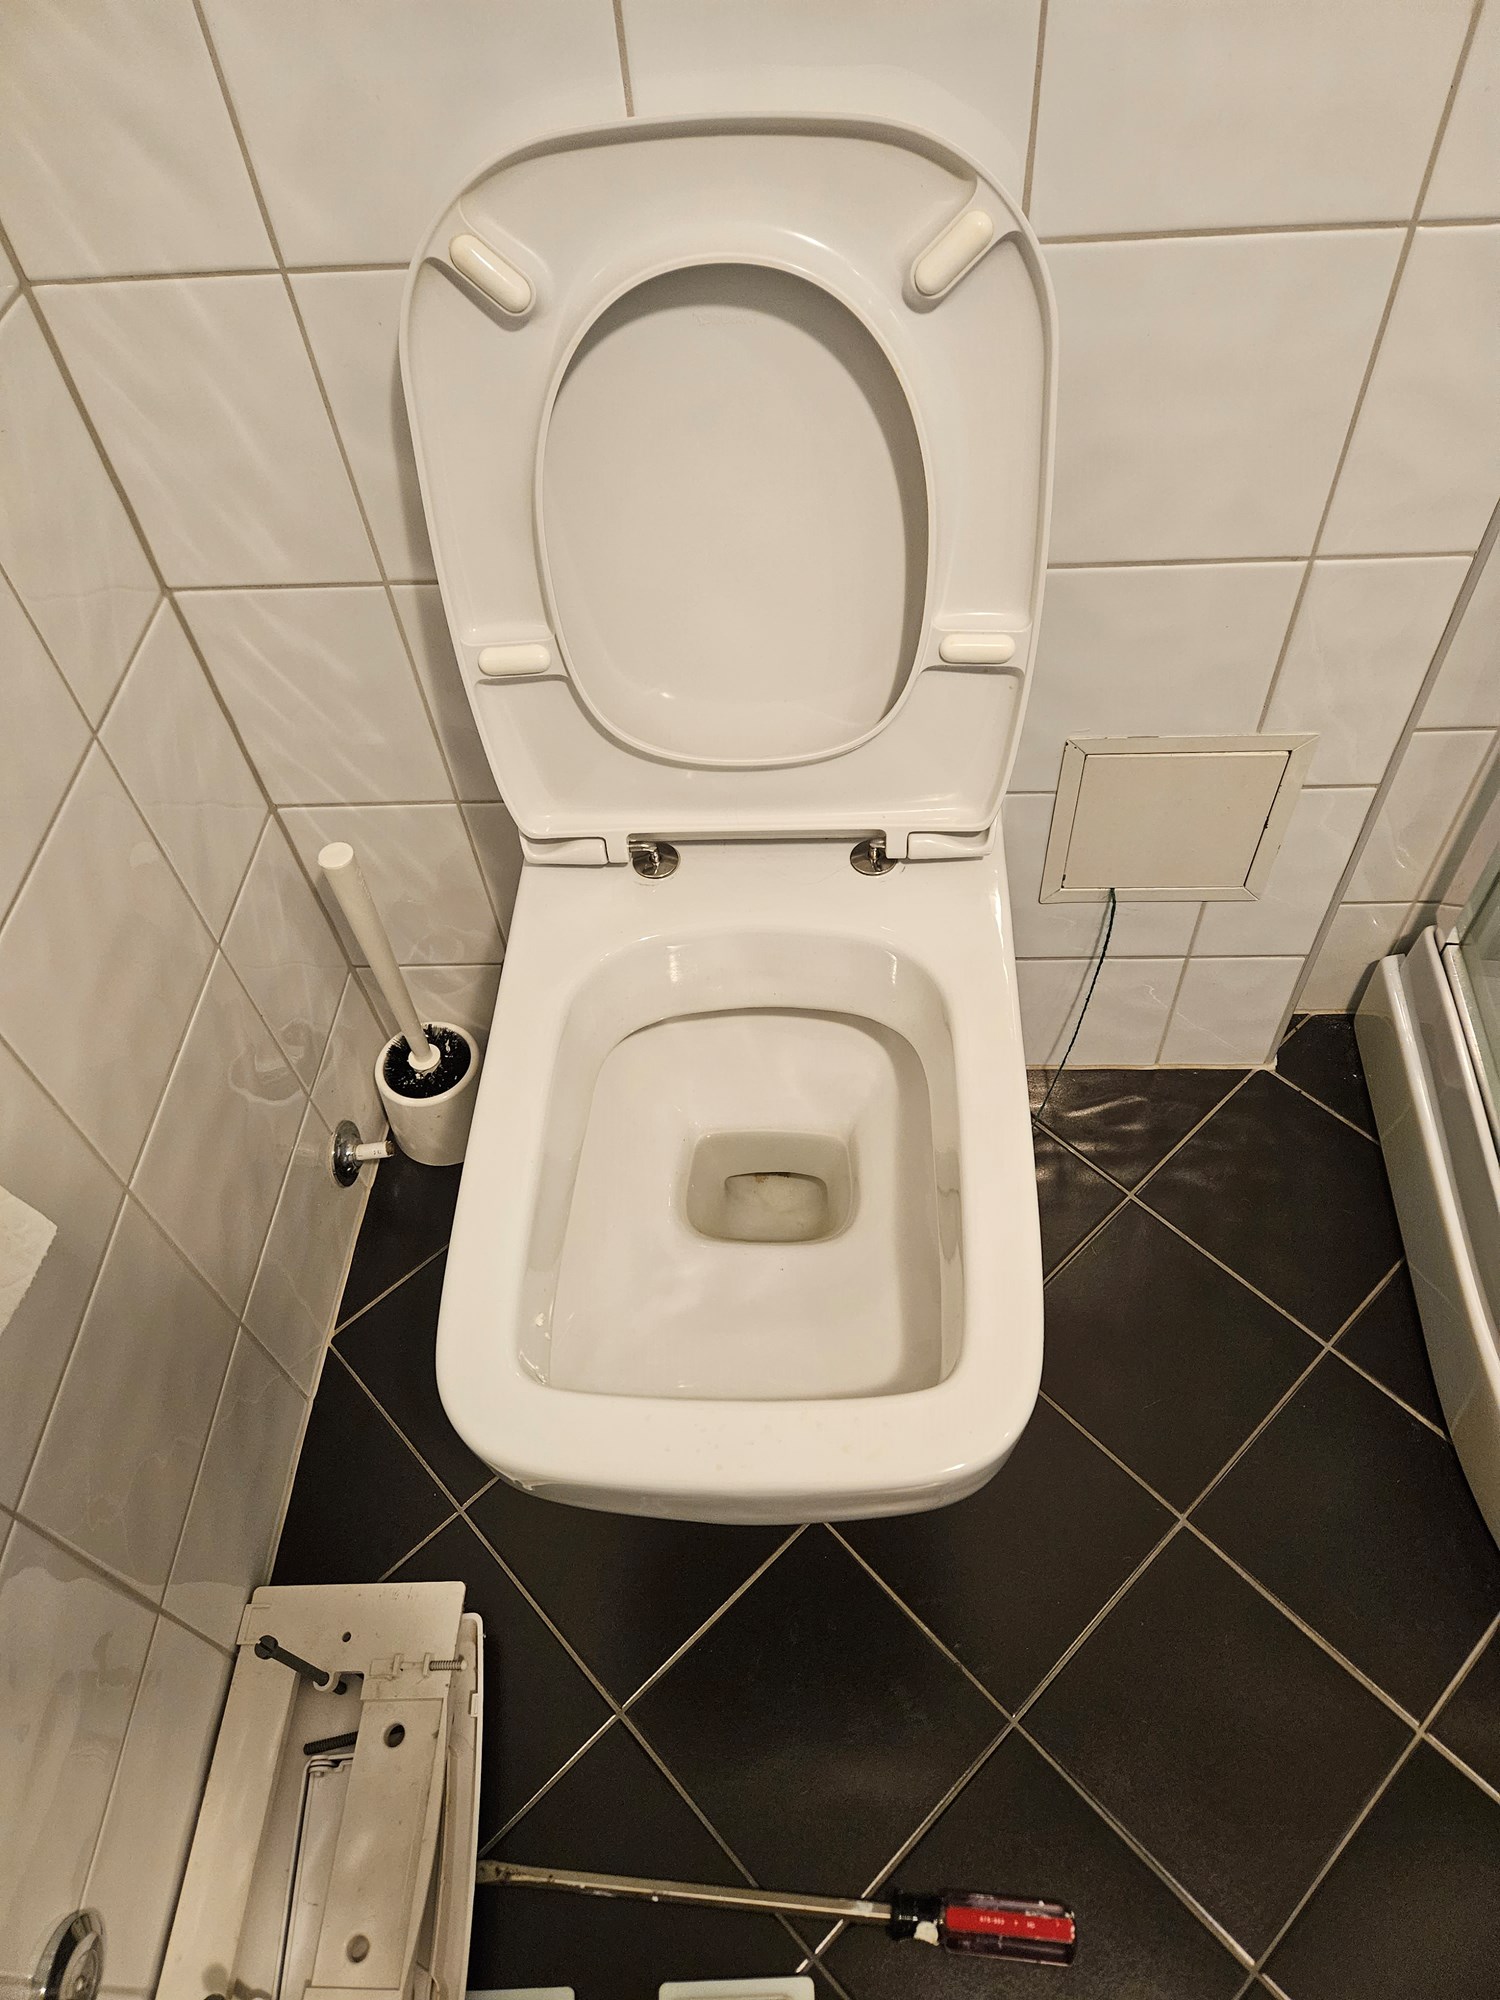 Ukjent toalett merke / reservedeler til sisterne - 20230914_110221.jpg - Lensvik2